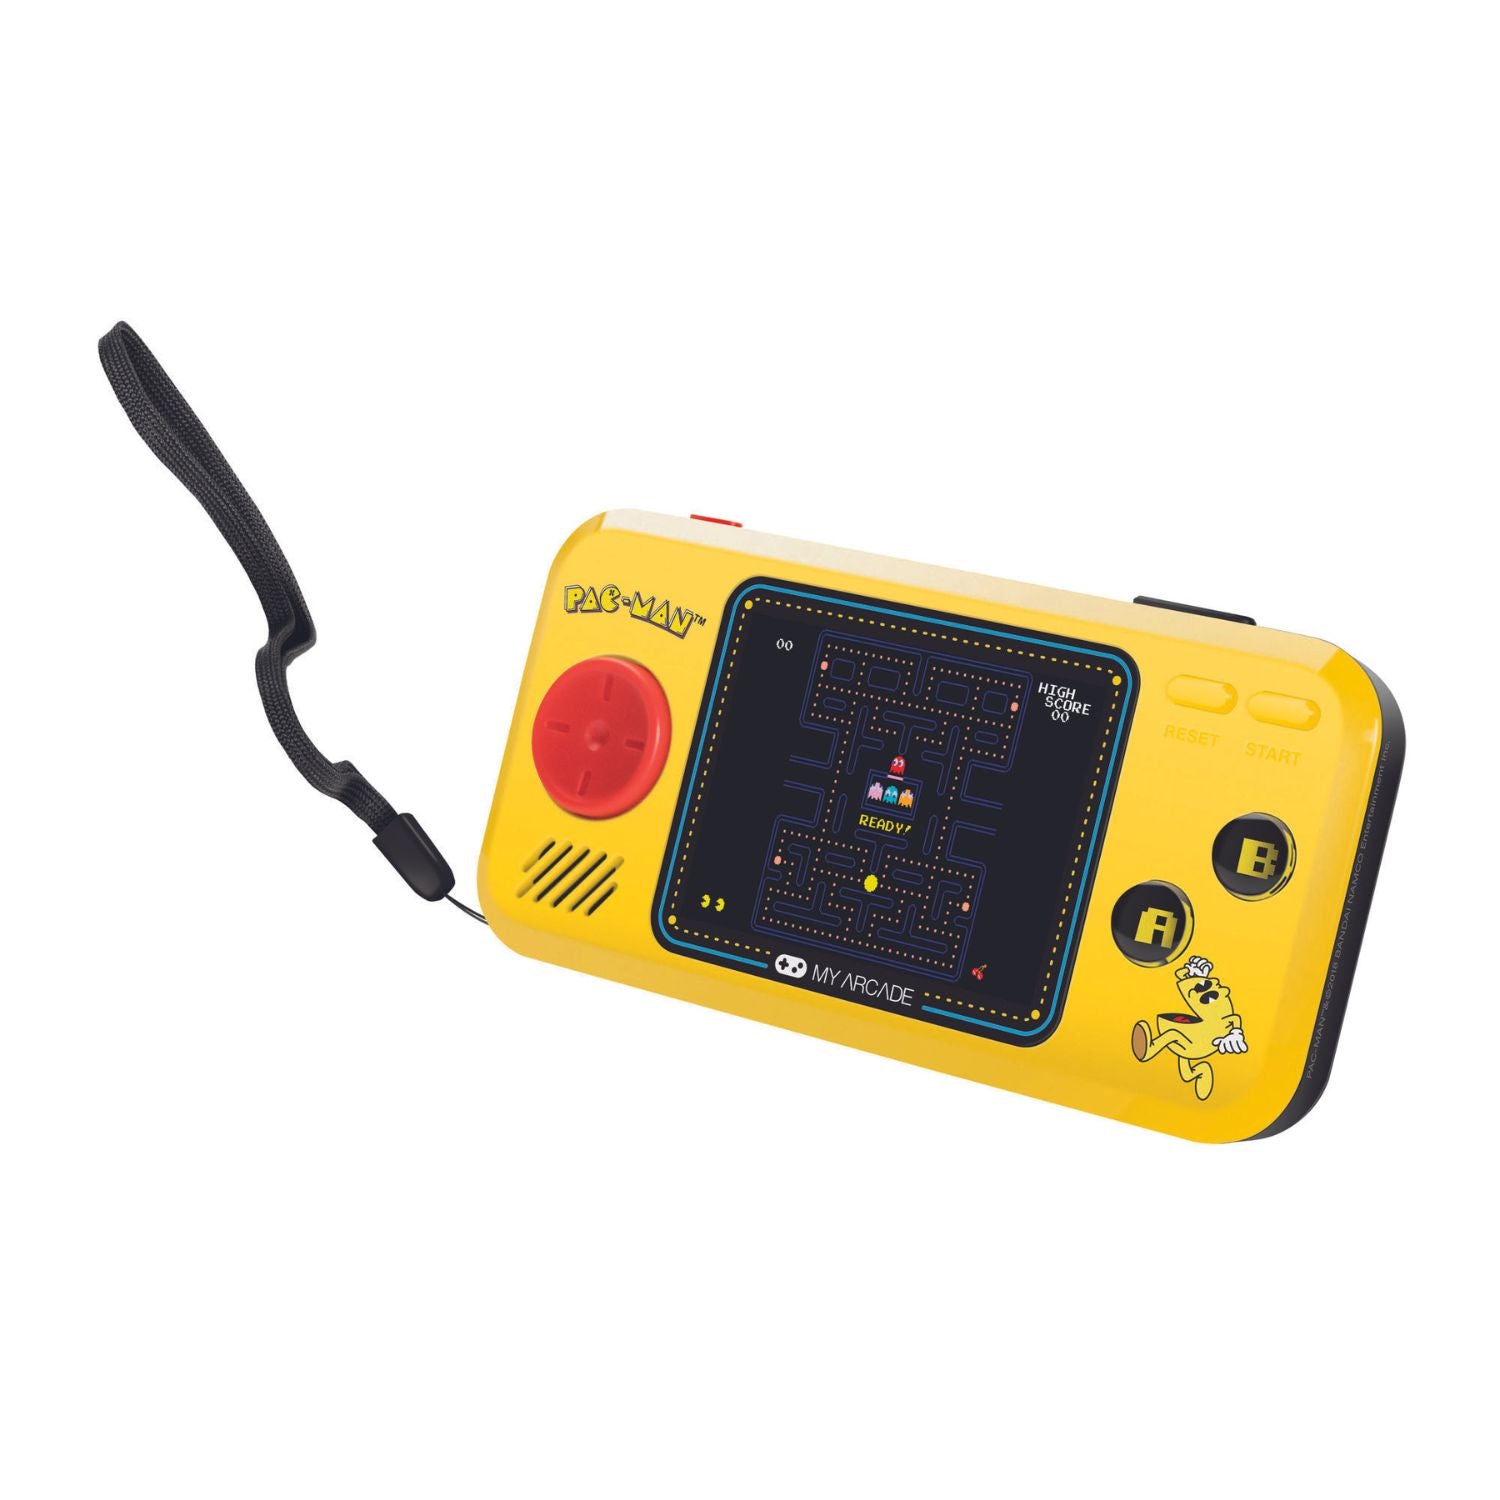 Pac-Man™ - Pocket Player (3 en 1)